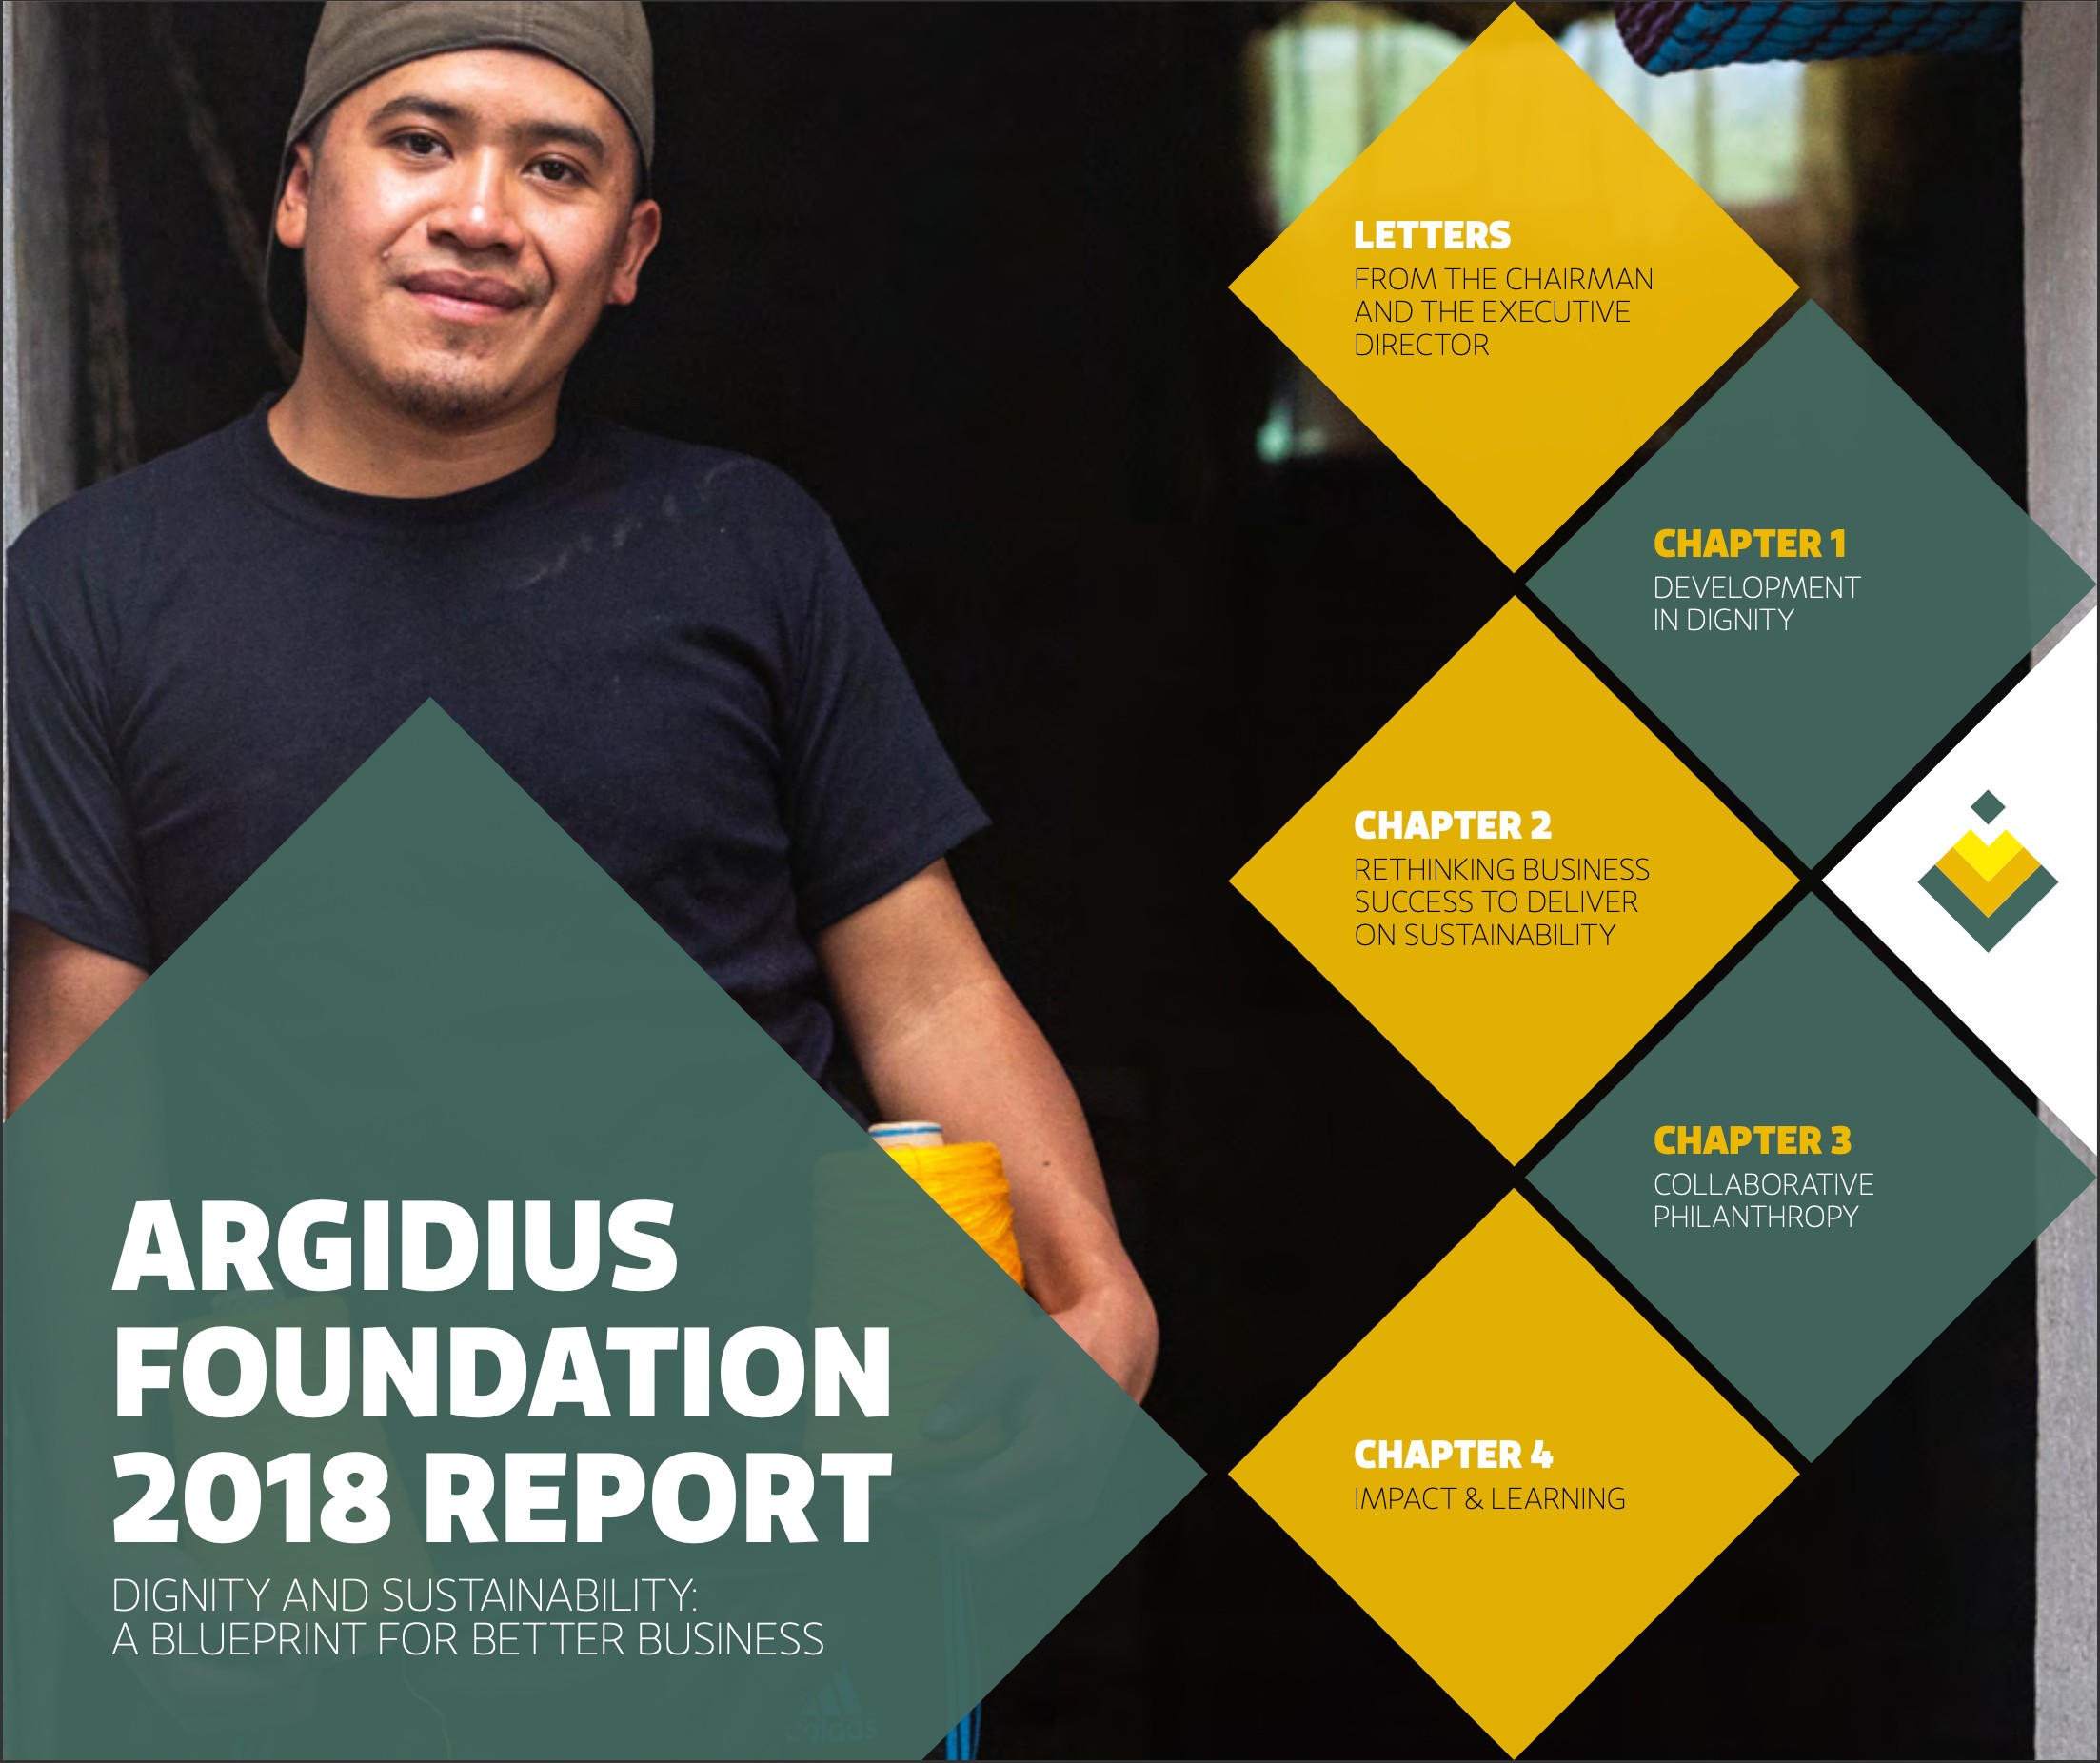 Argidius Foundation 2018 report - Iungo capital downloads